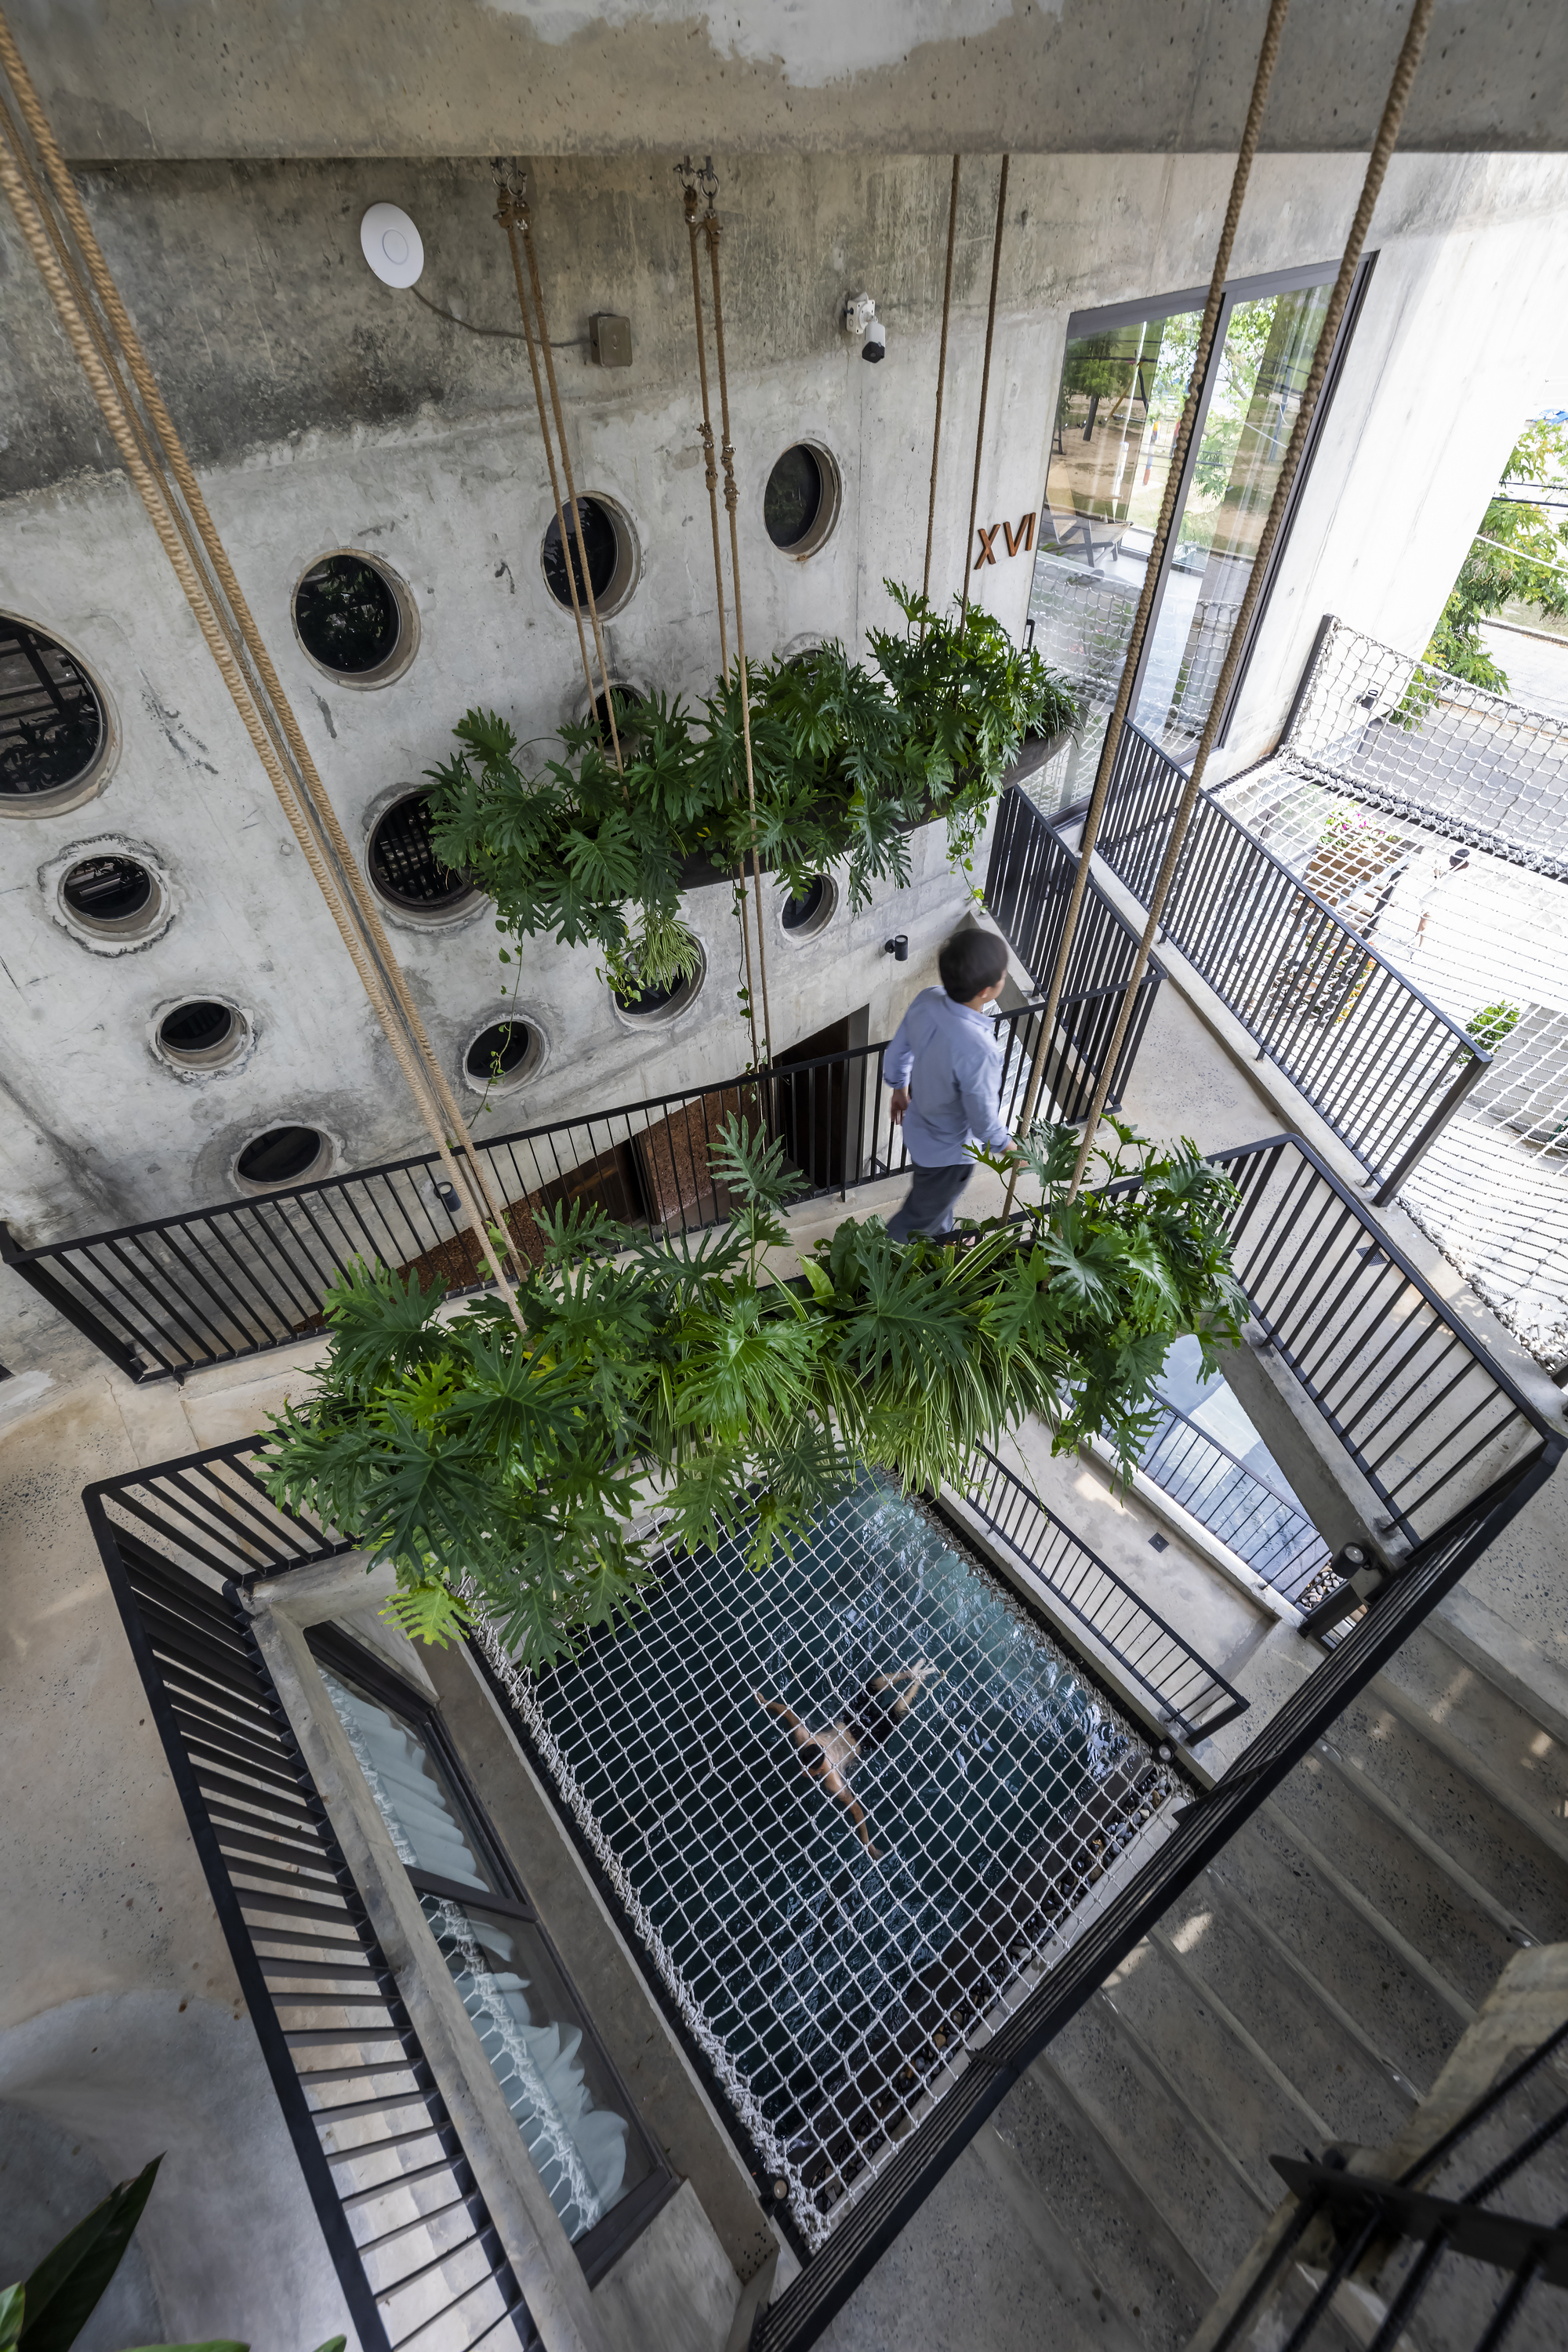 图片[5]|渔网连接悬浮水泥盒，Thalia 精品酒店 / Ho Khue Architects|ART-Arrakis | 建筑室内设计的创新与灵感